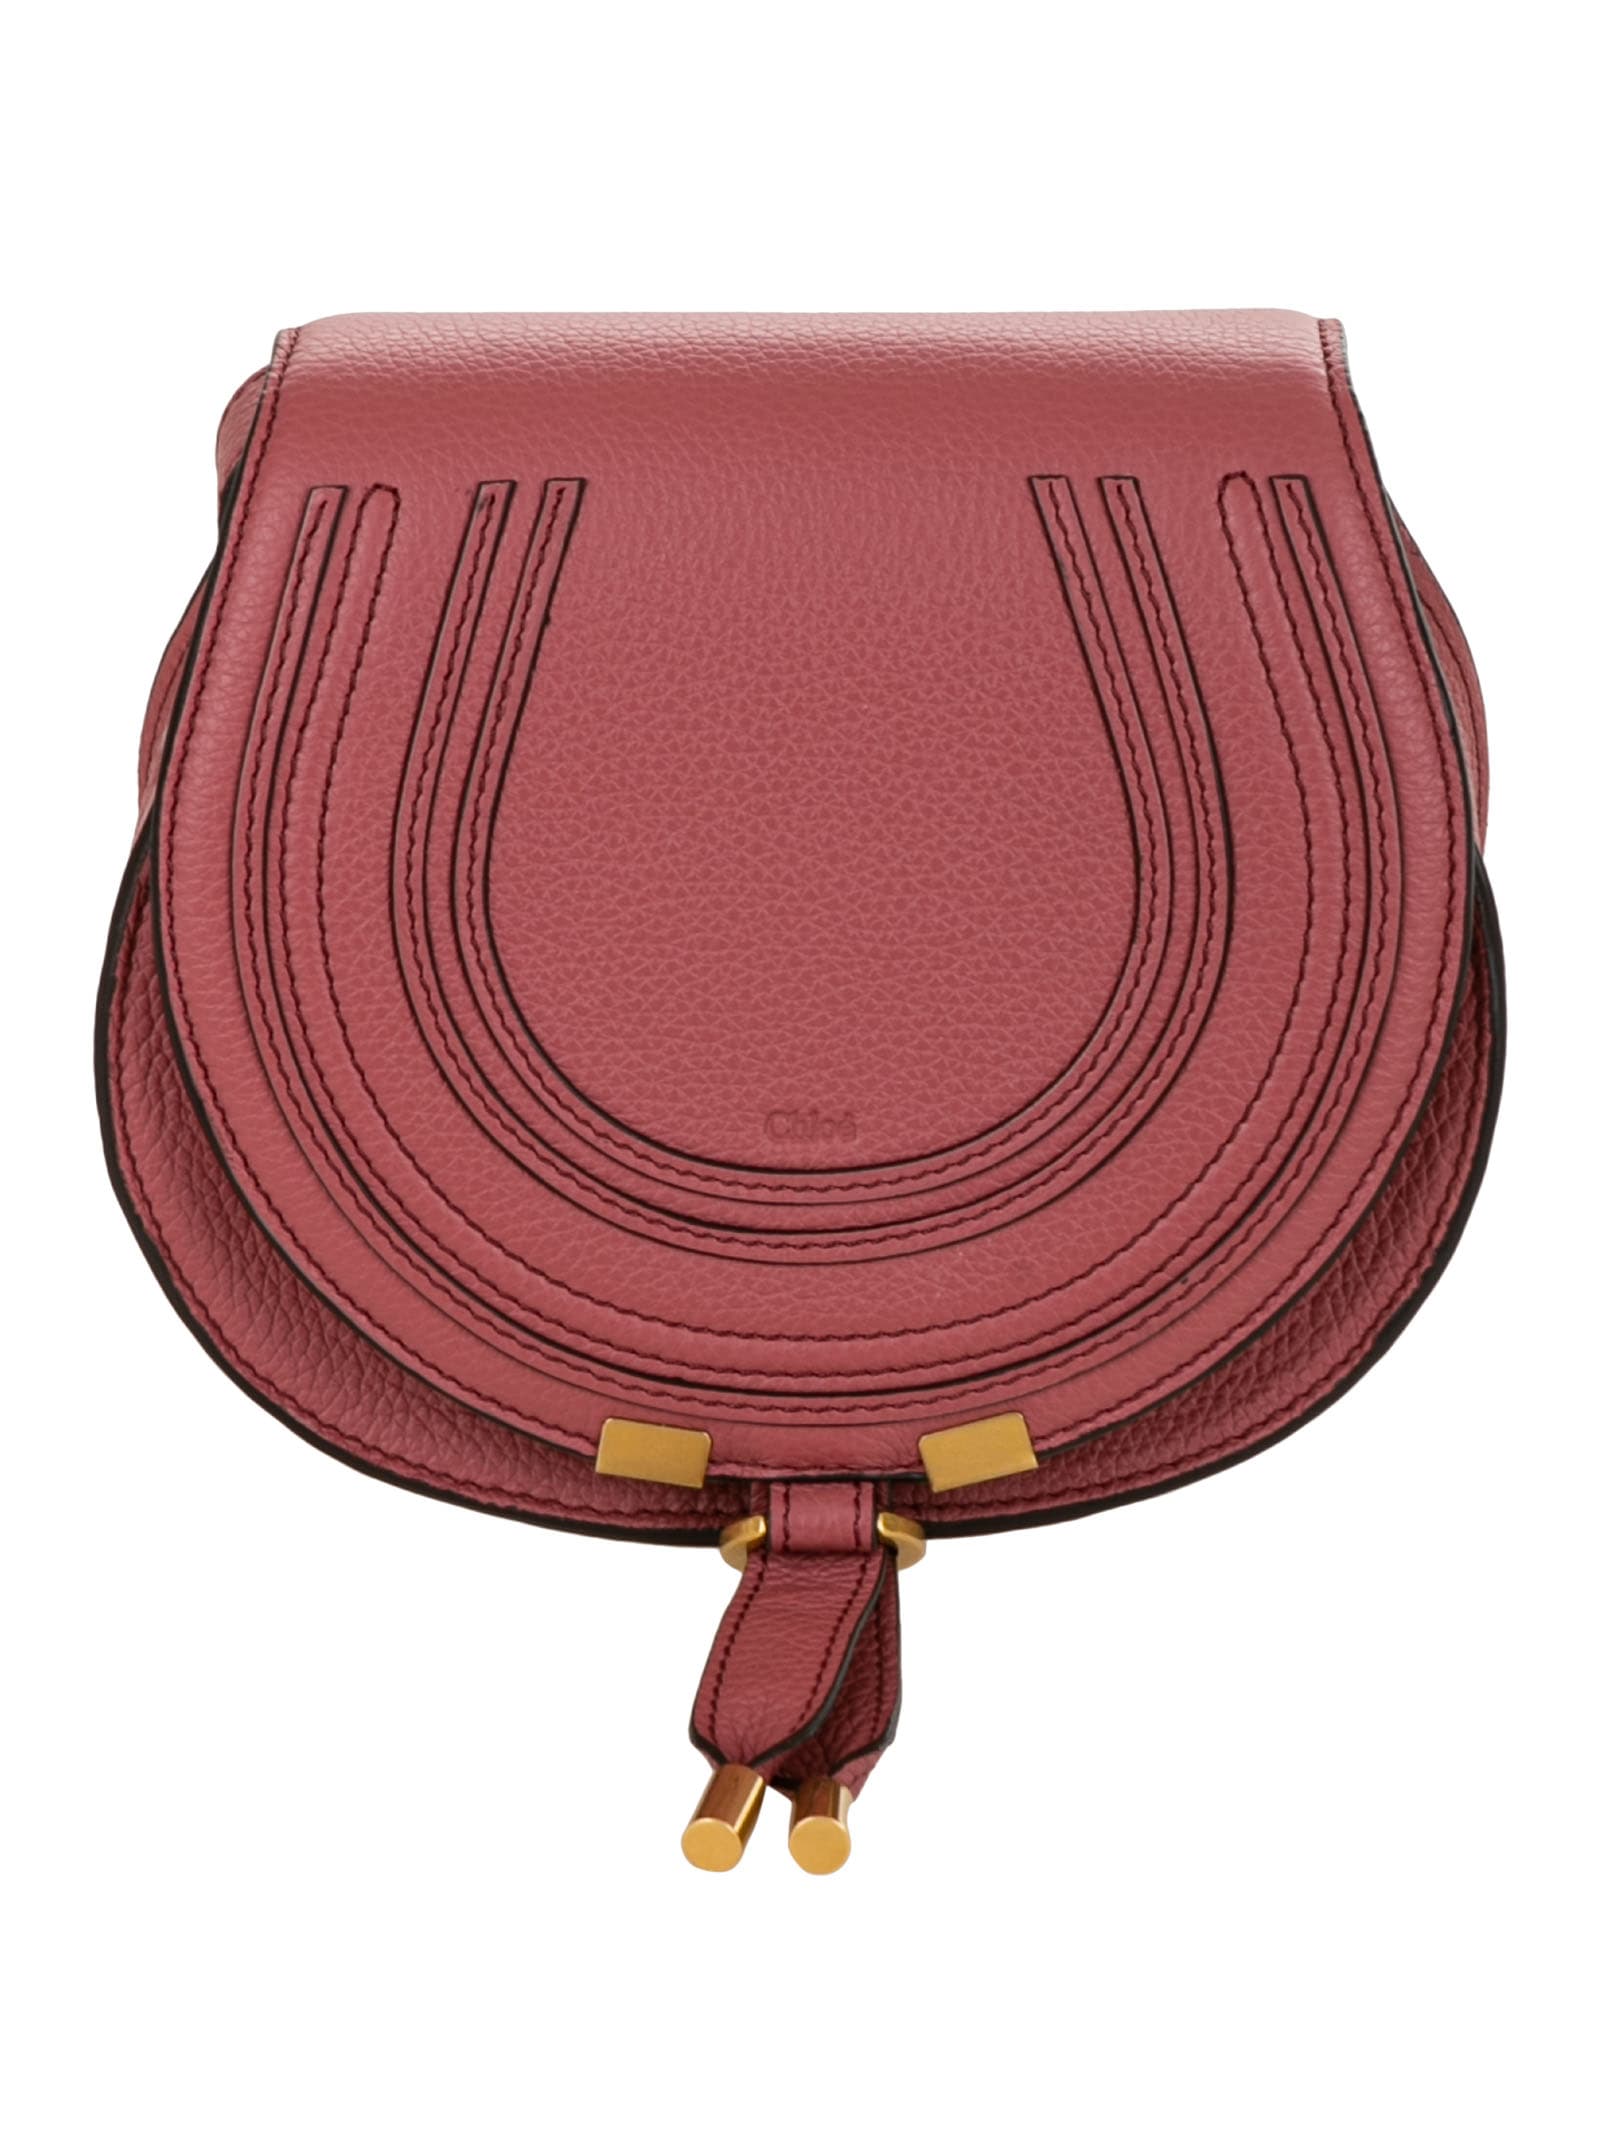 Chloé Small Marcie Saddle Bag